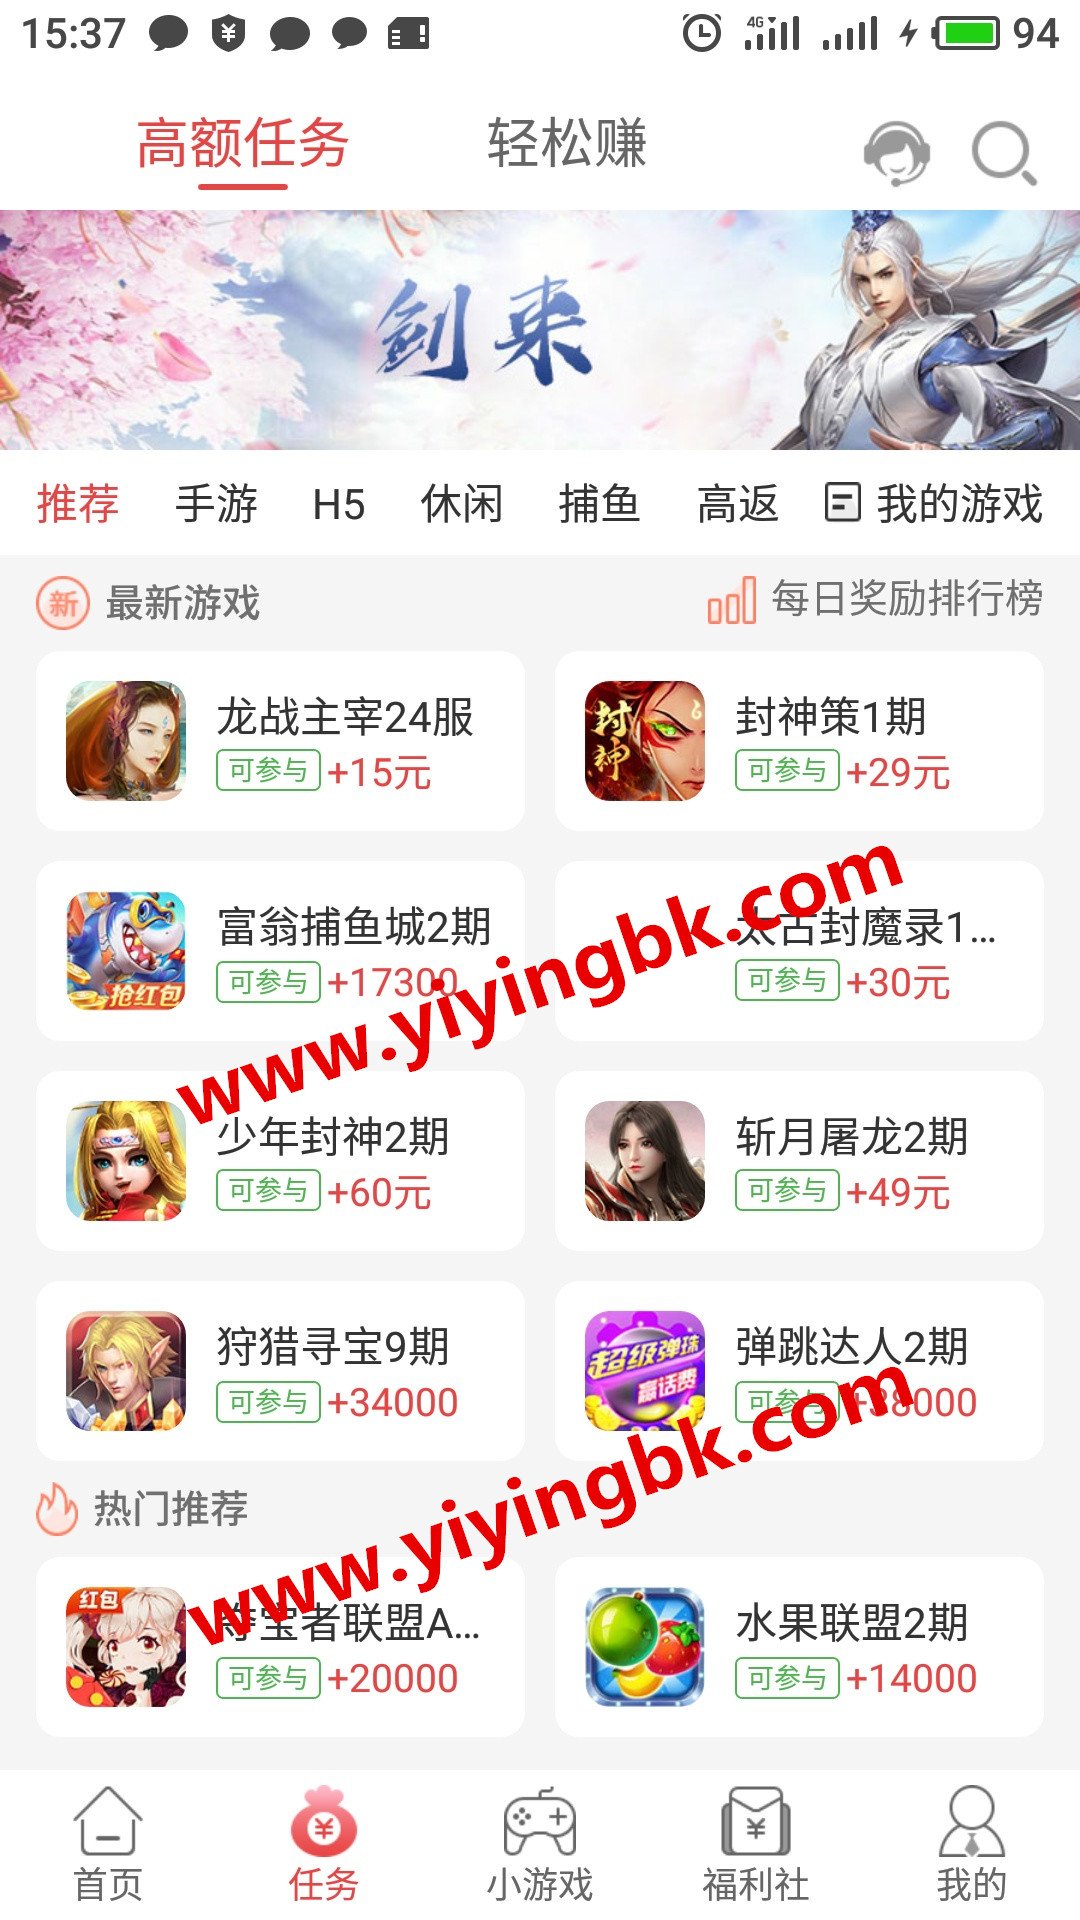 推荐手机赚钱游戏，可以提现微信和支付宝。www.yiyingbk.com